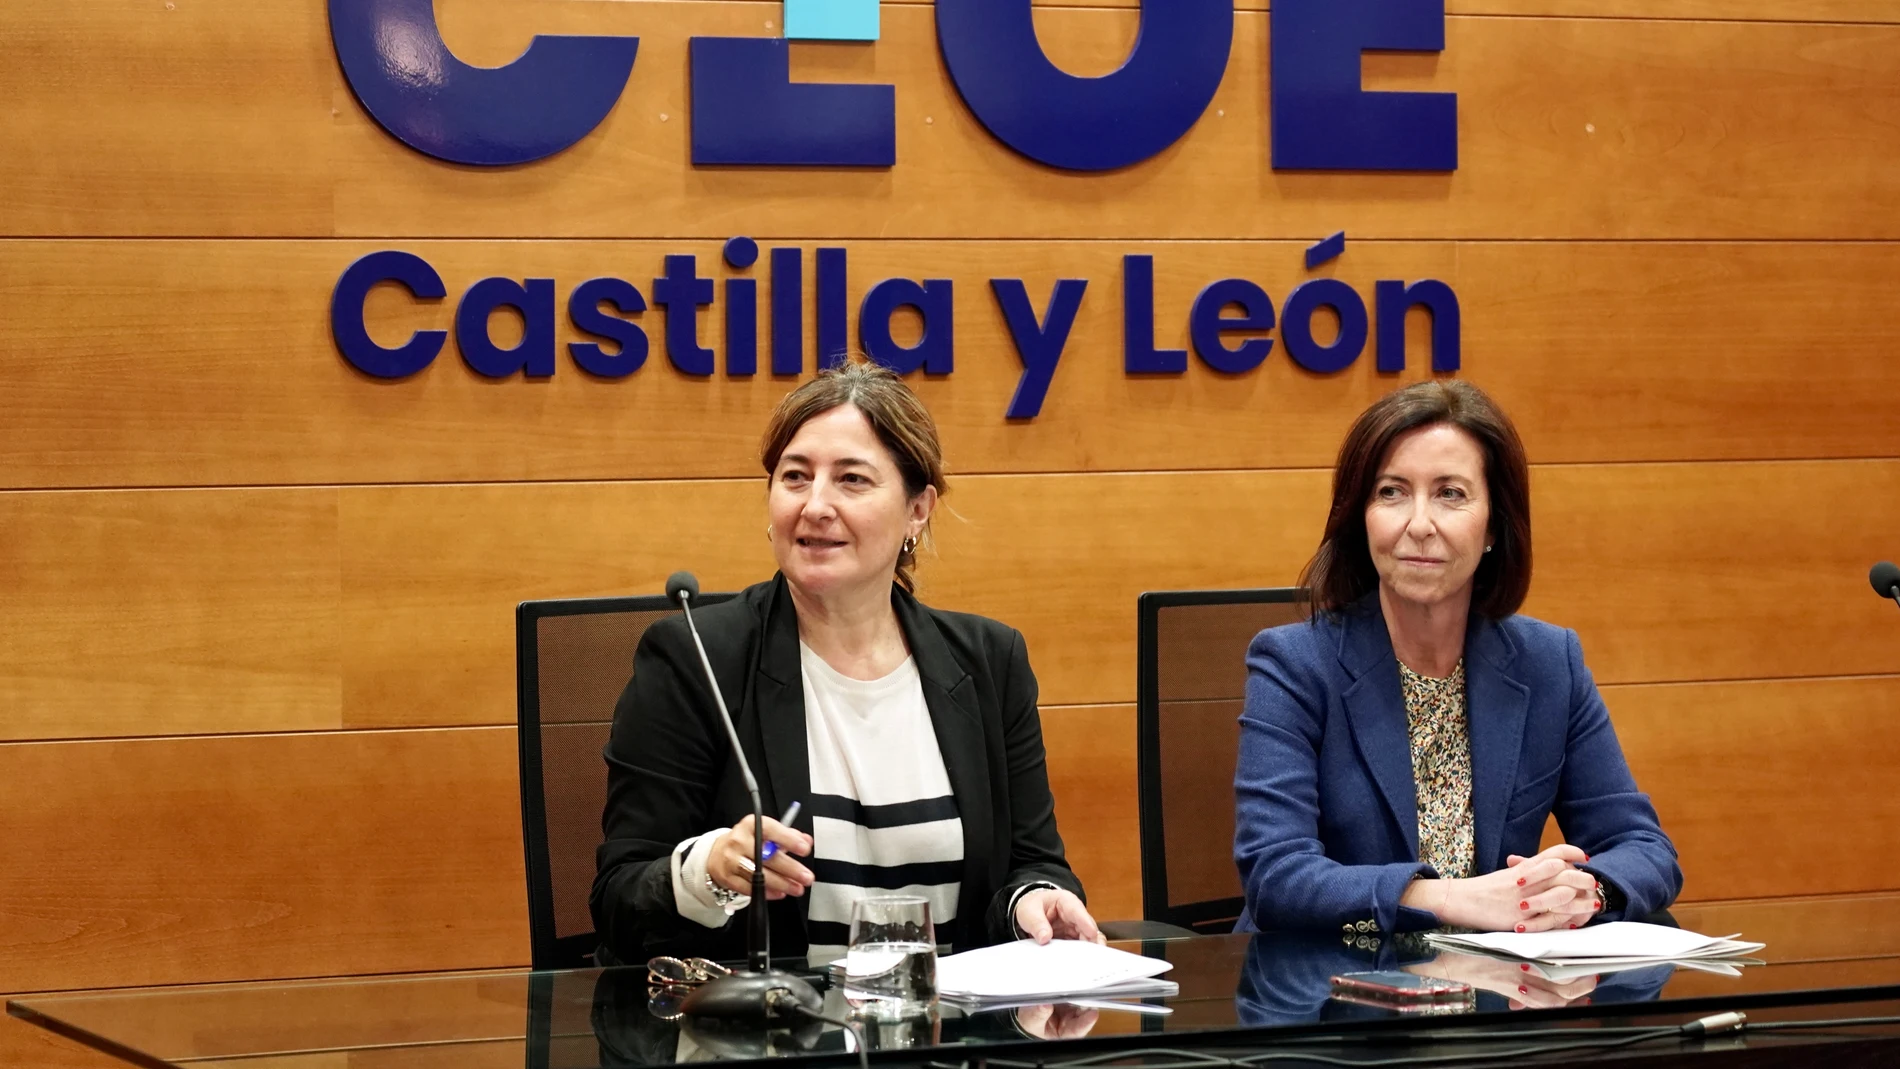 La secretaria general de CEOE Castilla y León, Teresa Cetulio, y la directora general de Comercio y Consumo de la Junta, María Pettit, presentan el proyecto de promoción de la industria del sector textil y de la moda autonómica